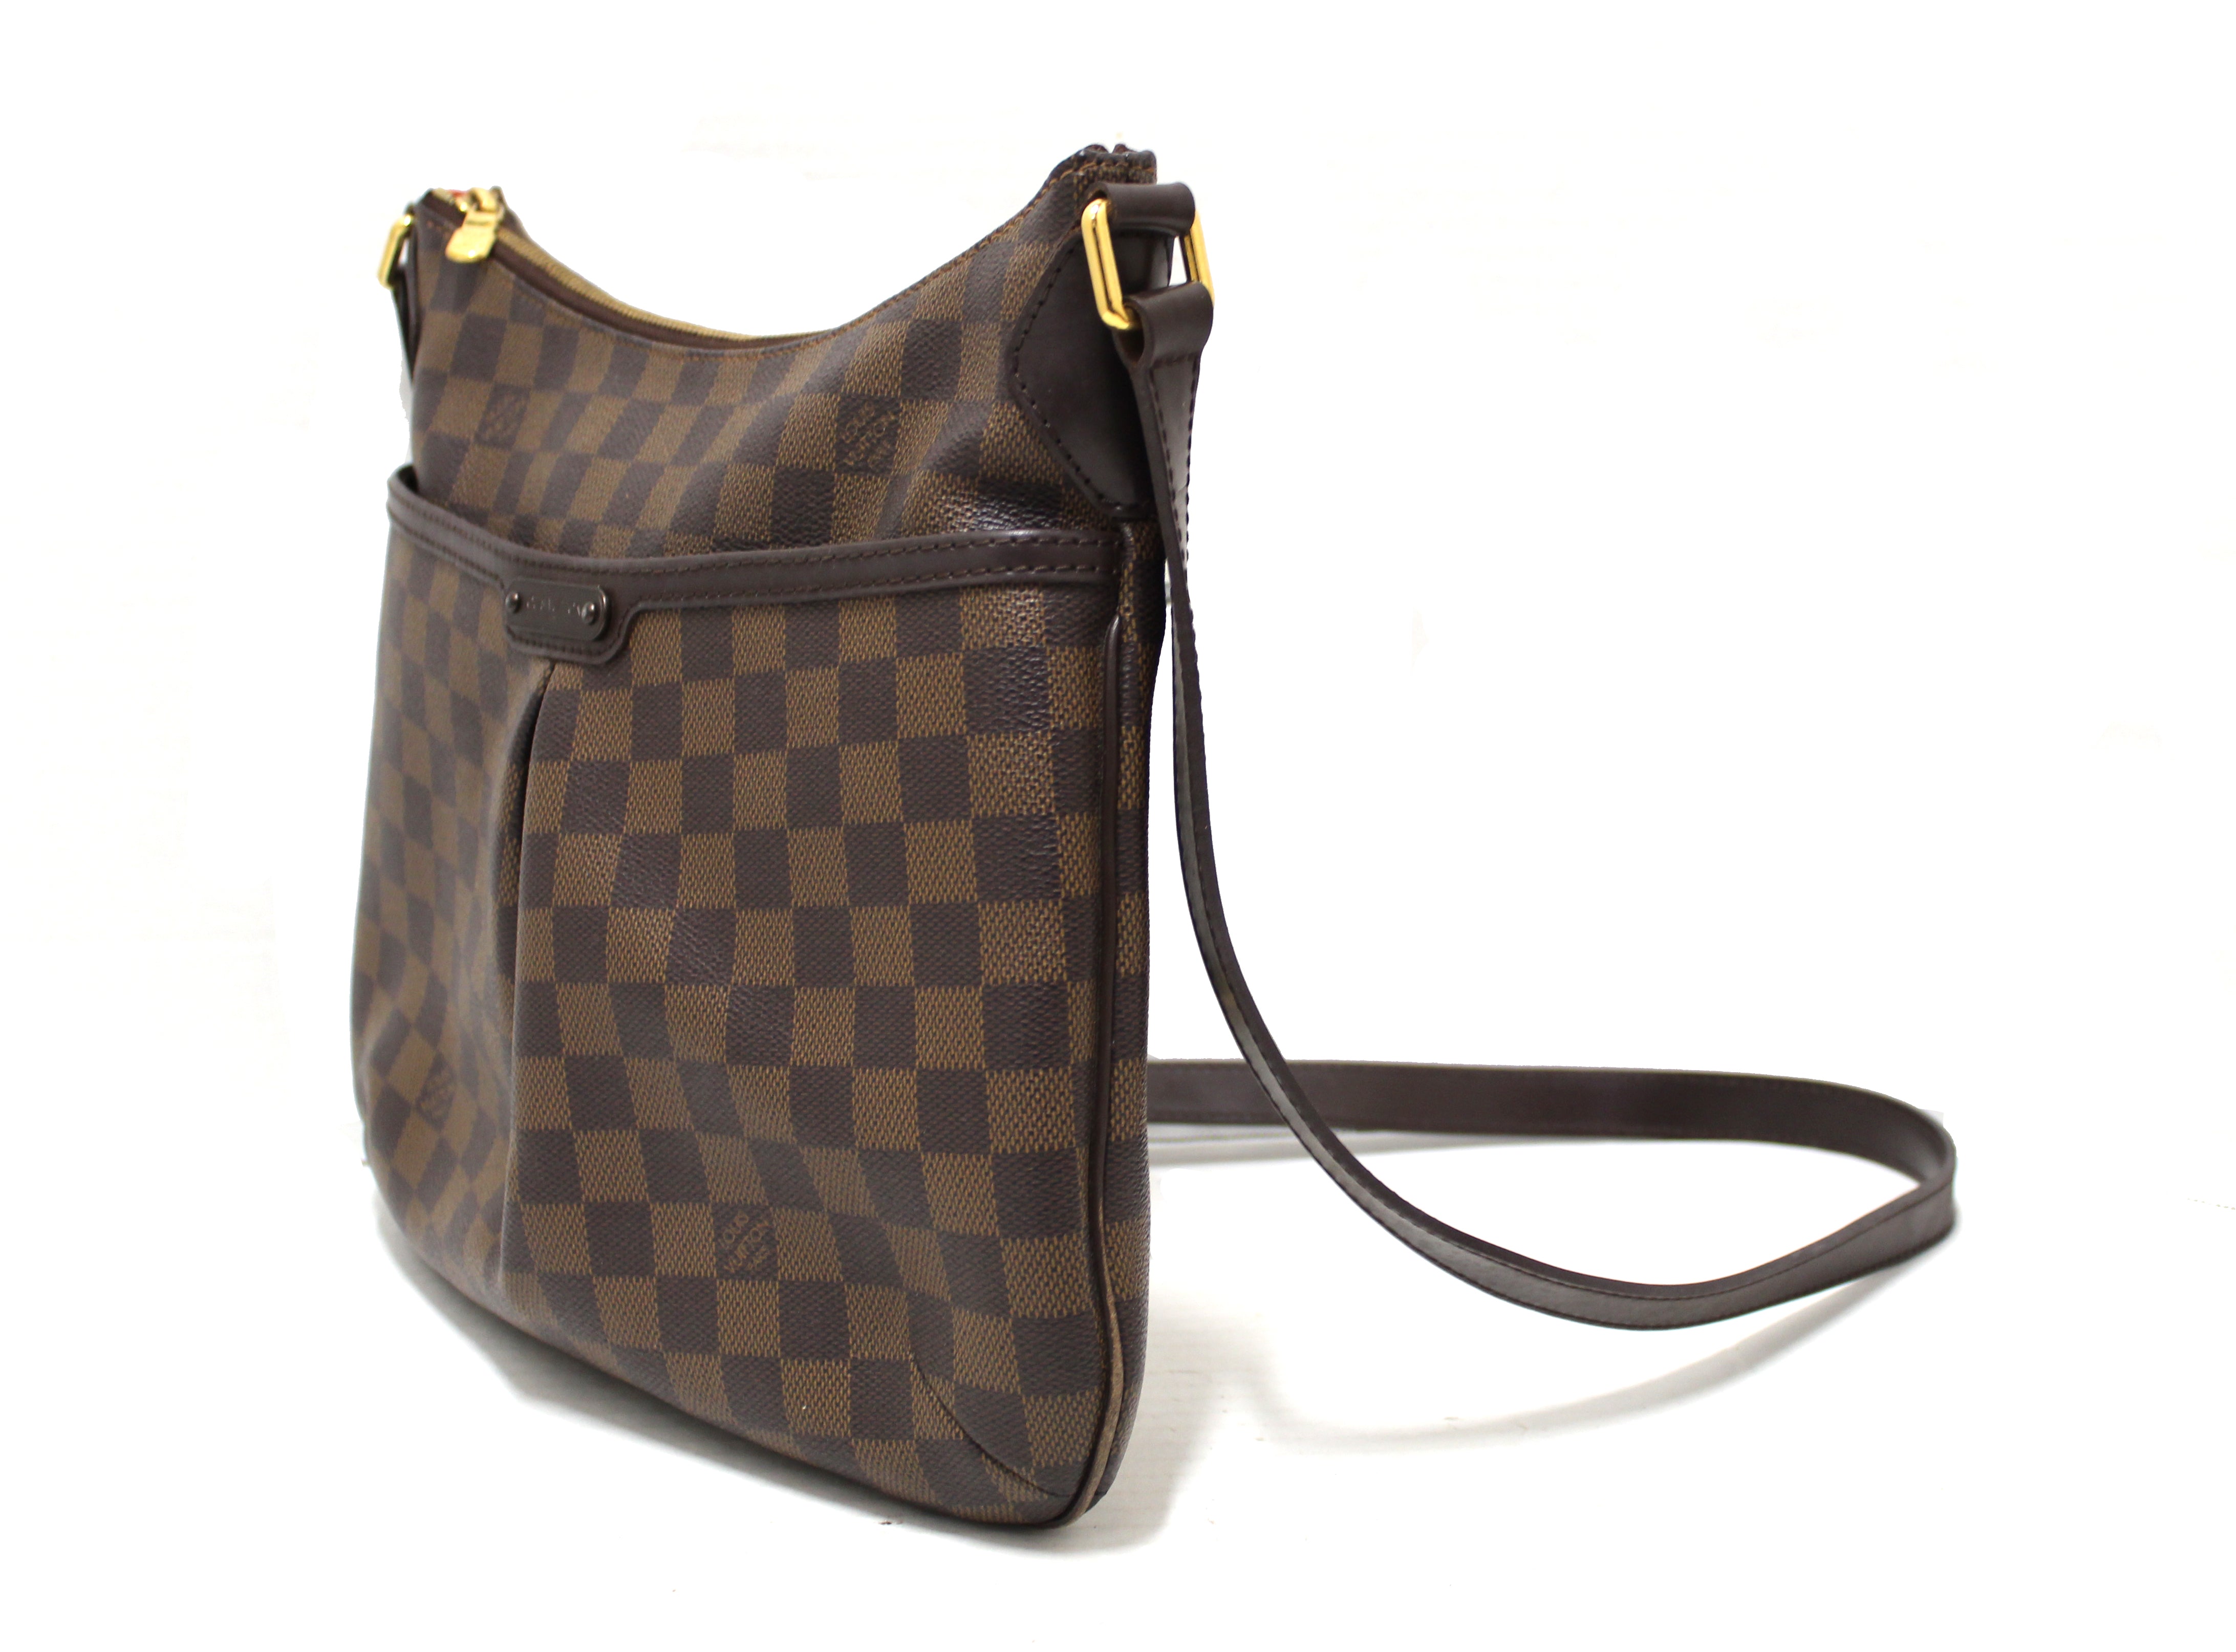 Louis Vuitton, Bags, Louis Vuitton Shoulder Bag Damier Canvas Damier  Bloomsbury Pm